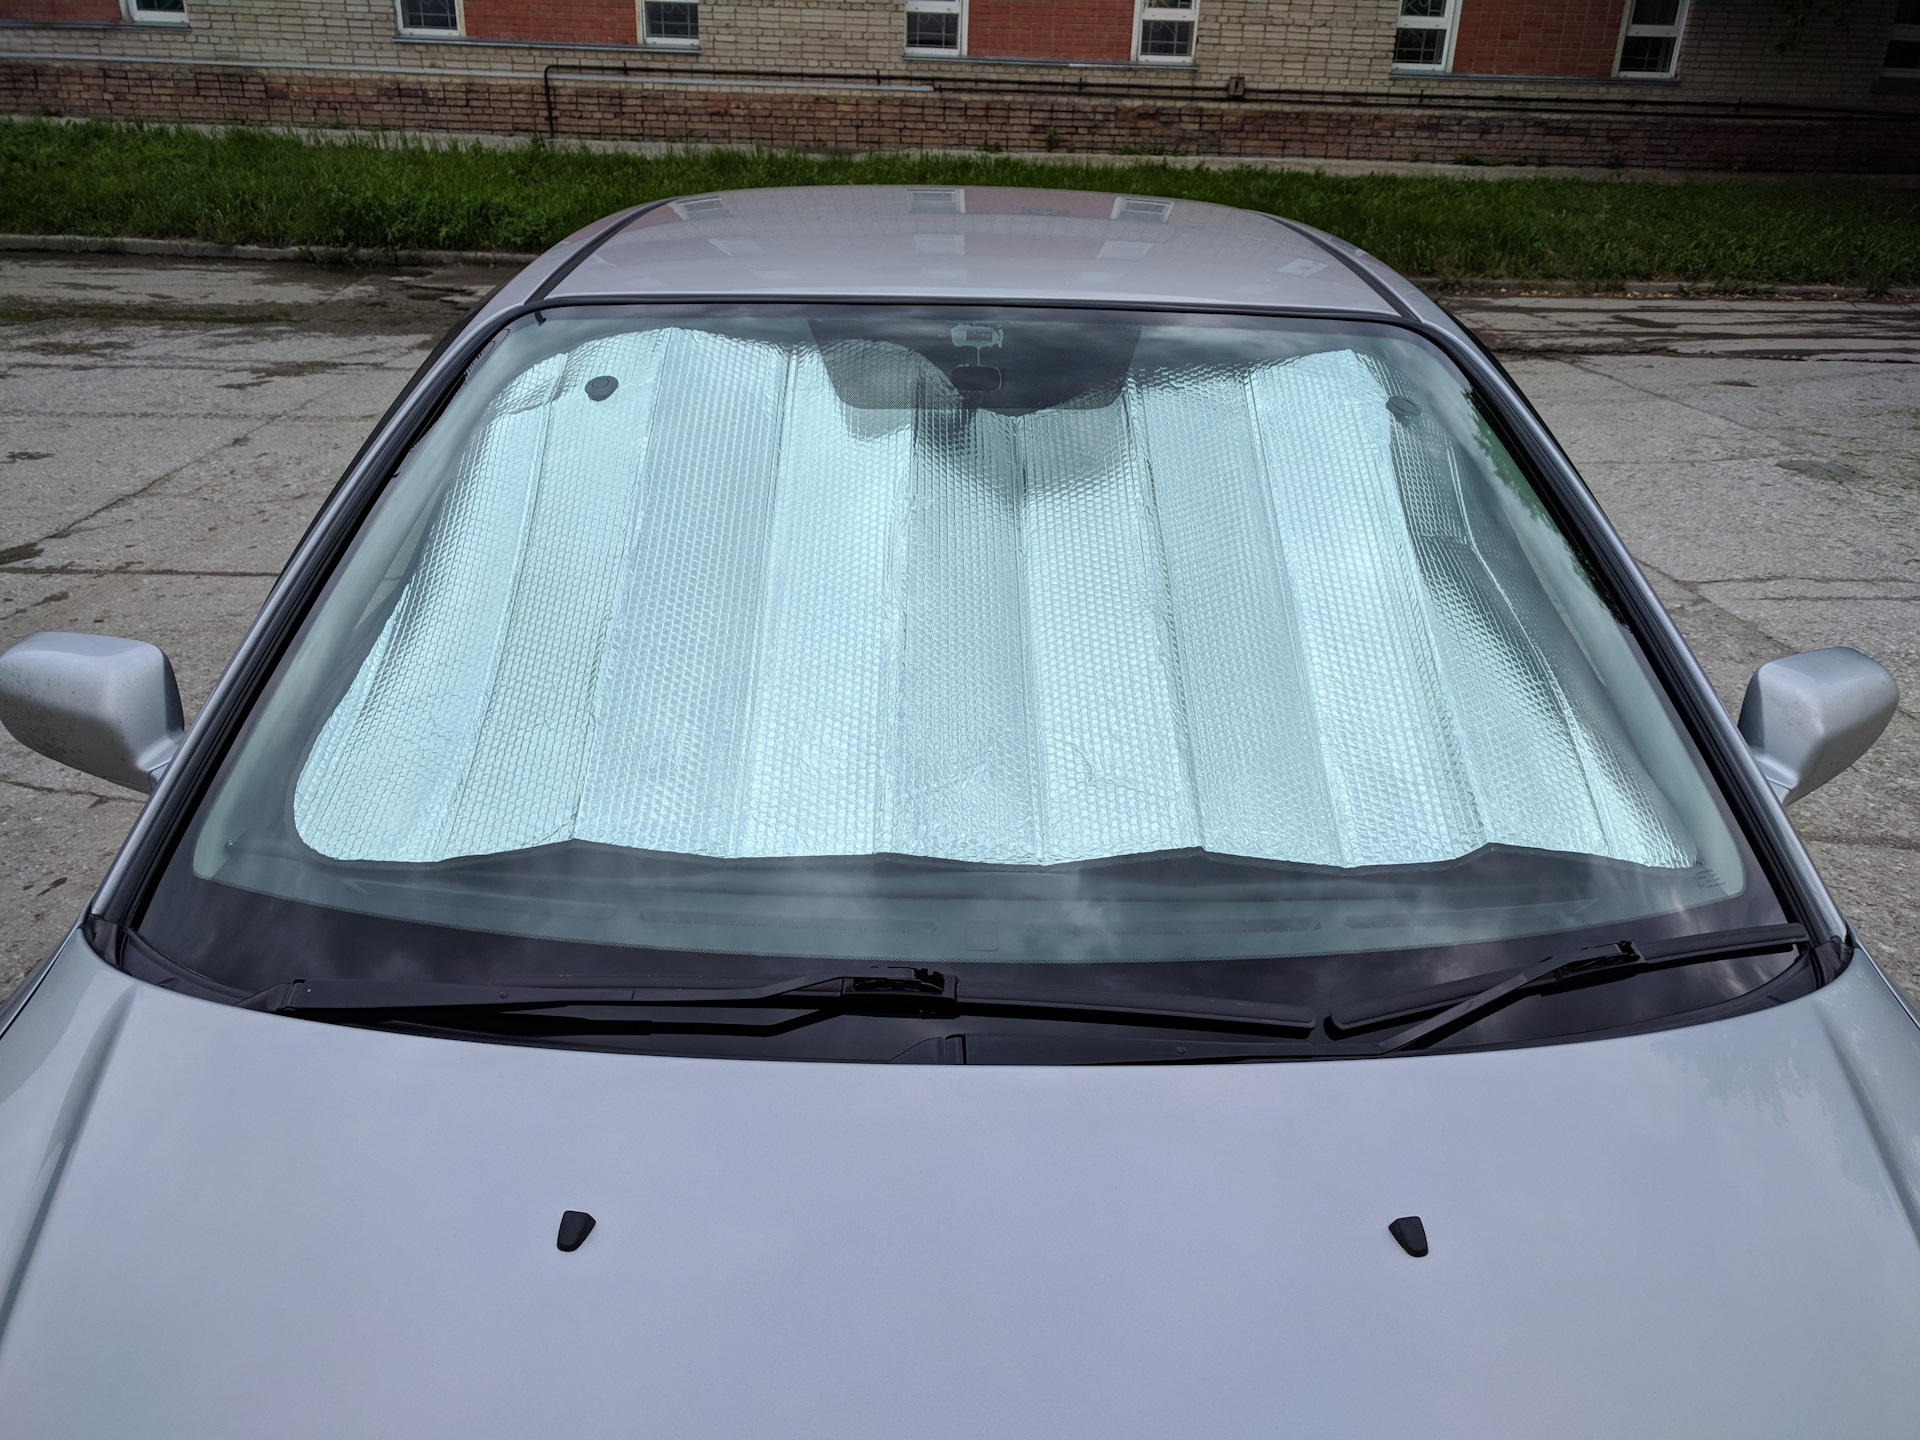 Шторка на лобовое стекло автомобиля. Солнцезащитная шторка на лобовое стекло 1405-939. Форд фокус 2 солнцезащитный экран лобового стекла. Солнцезащитный экран на лобовое стекло. Шторка от солнца для автомобиля на лобовое.